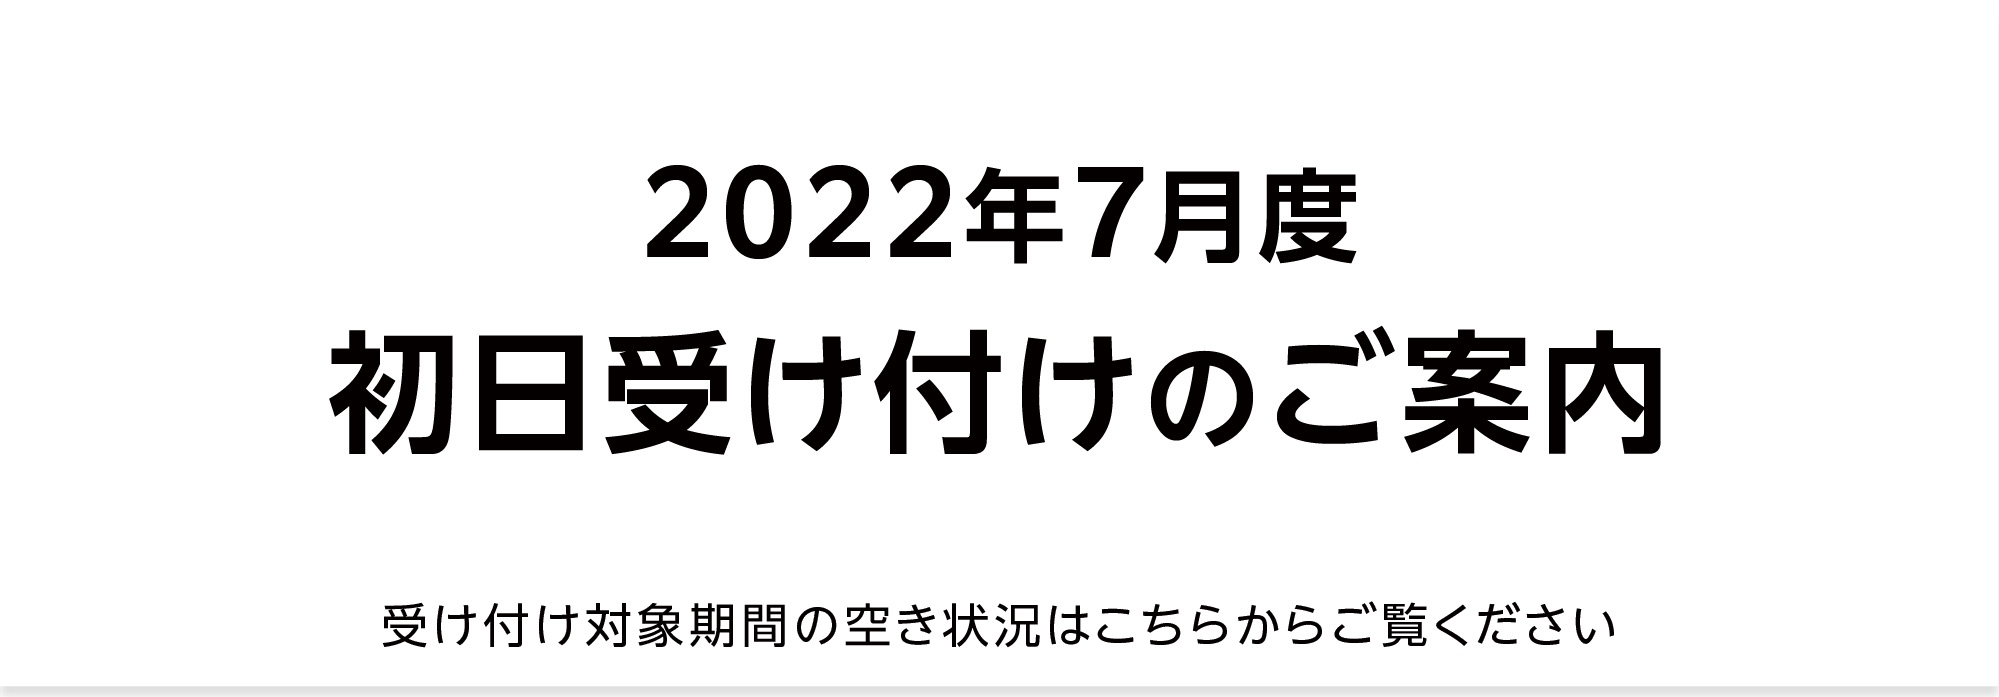 【重要】2022年7月 初日受け付け（空き状況掲載）